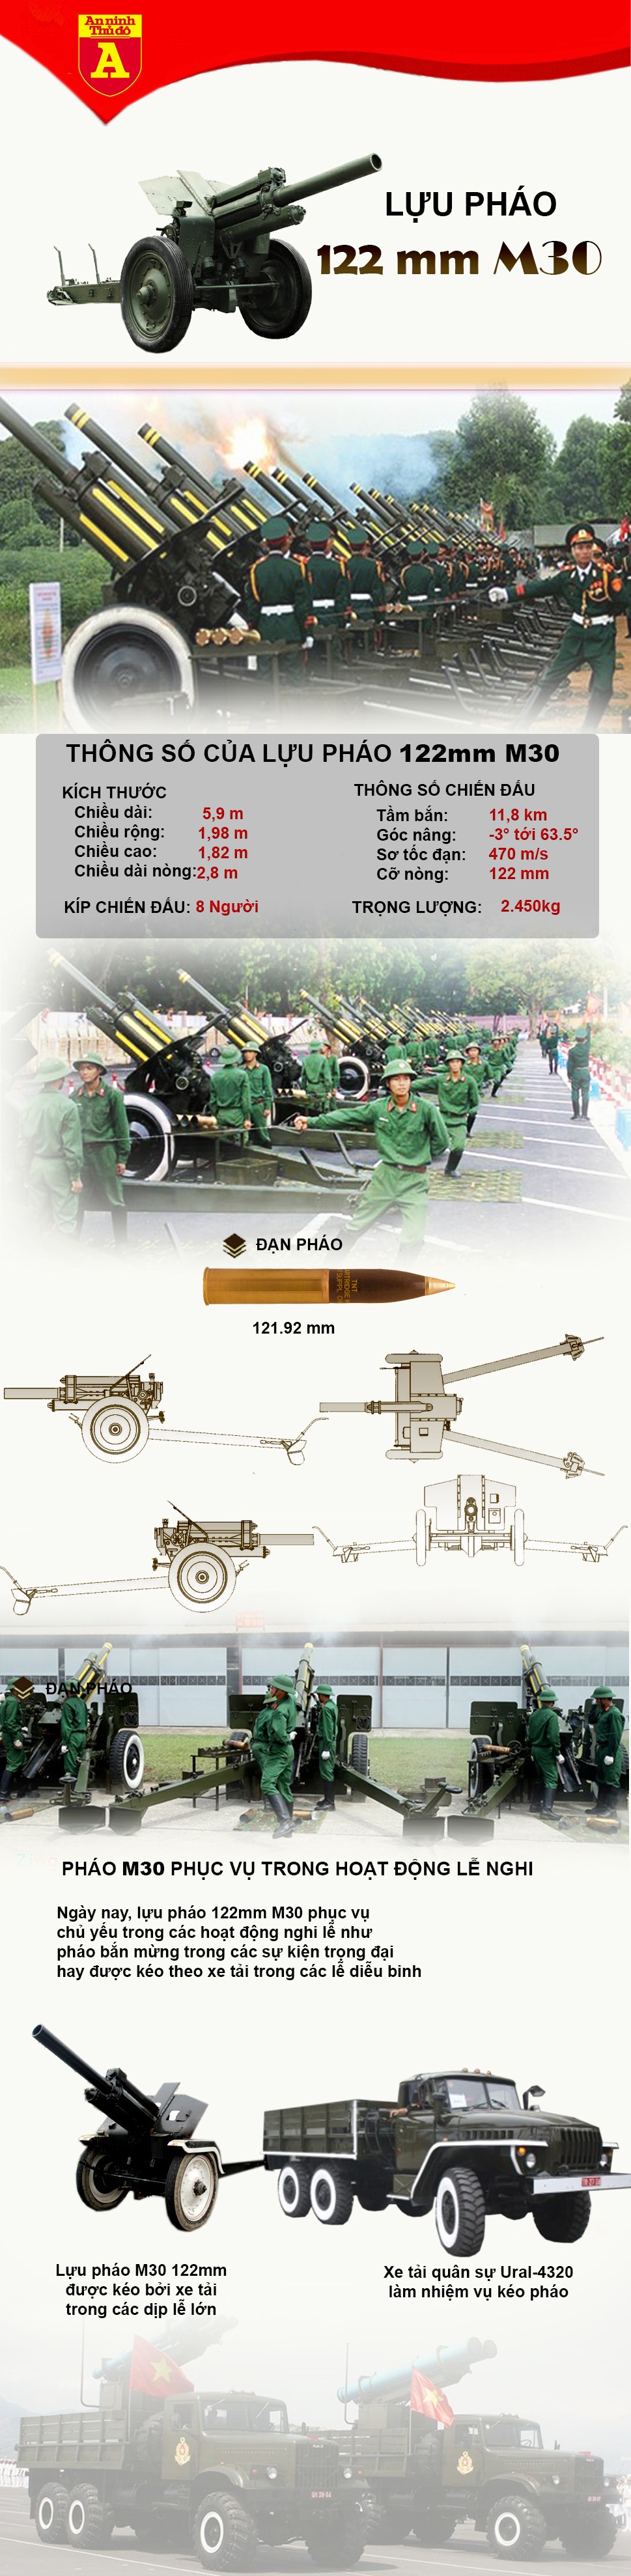 [Infographic] Tìm hiểu uy lực khẩu pháo dùng trong nghi lễ của Việt Nam ảnh 2